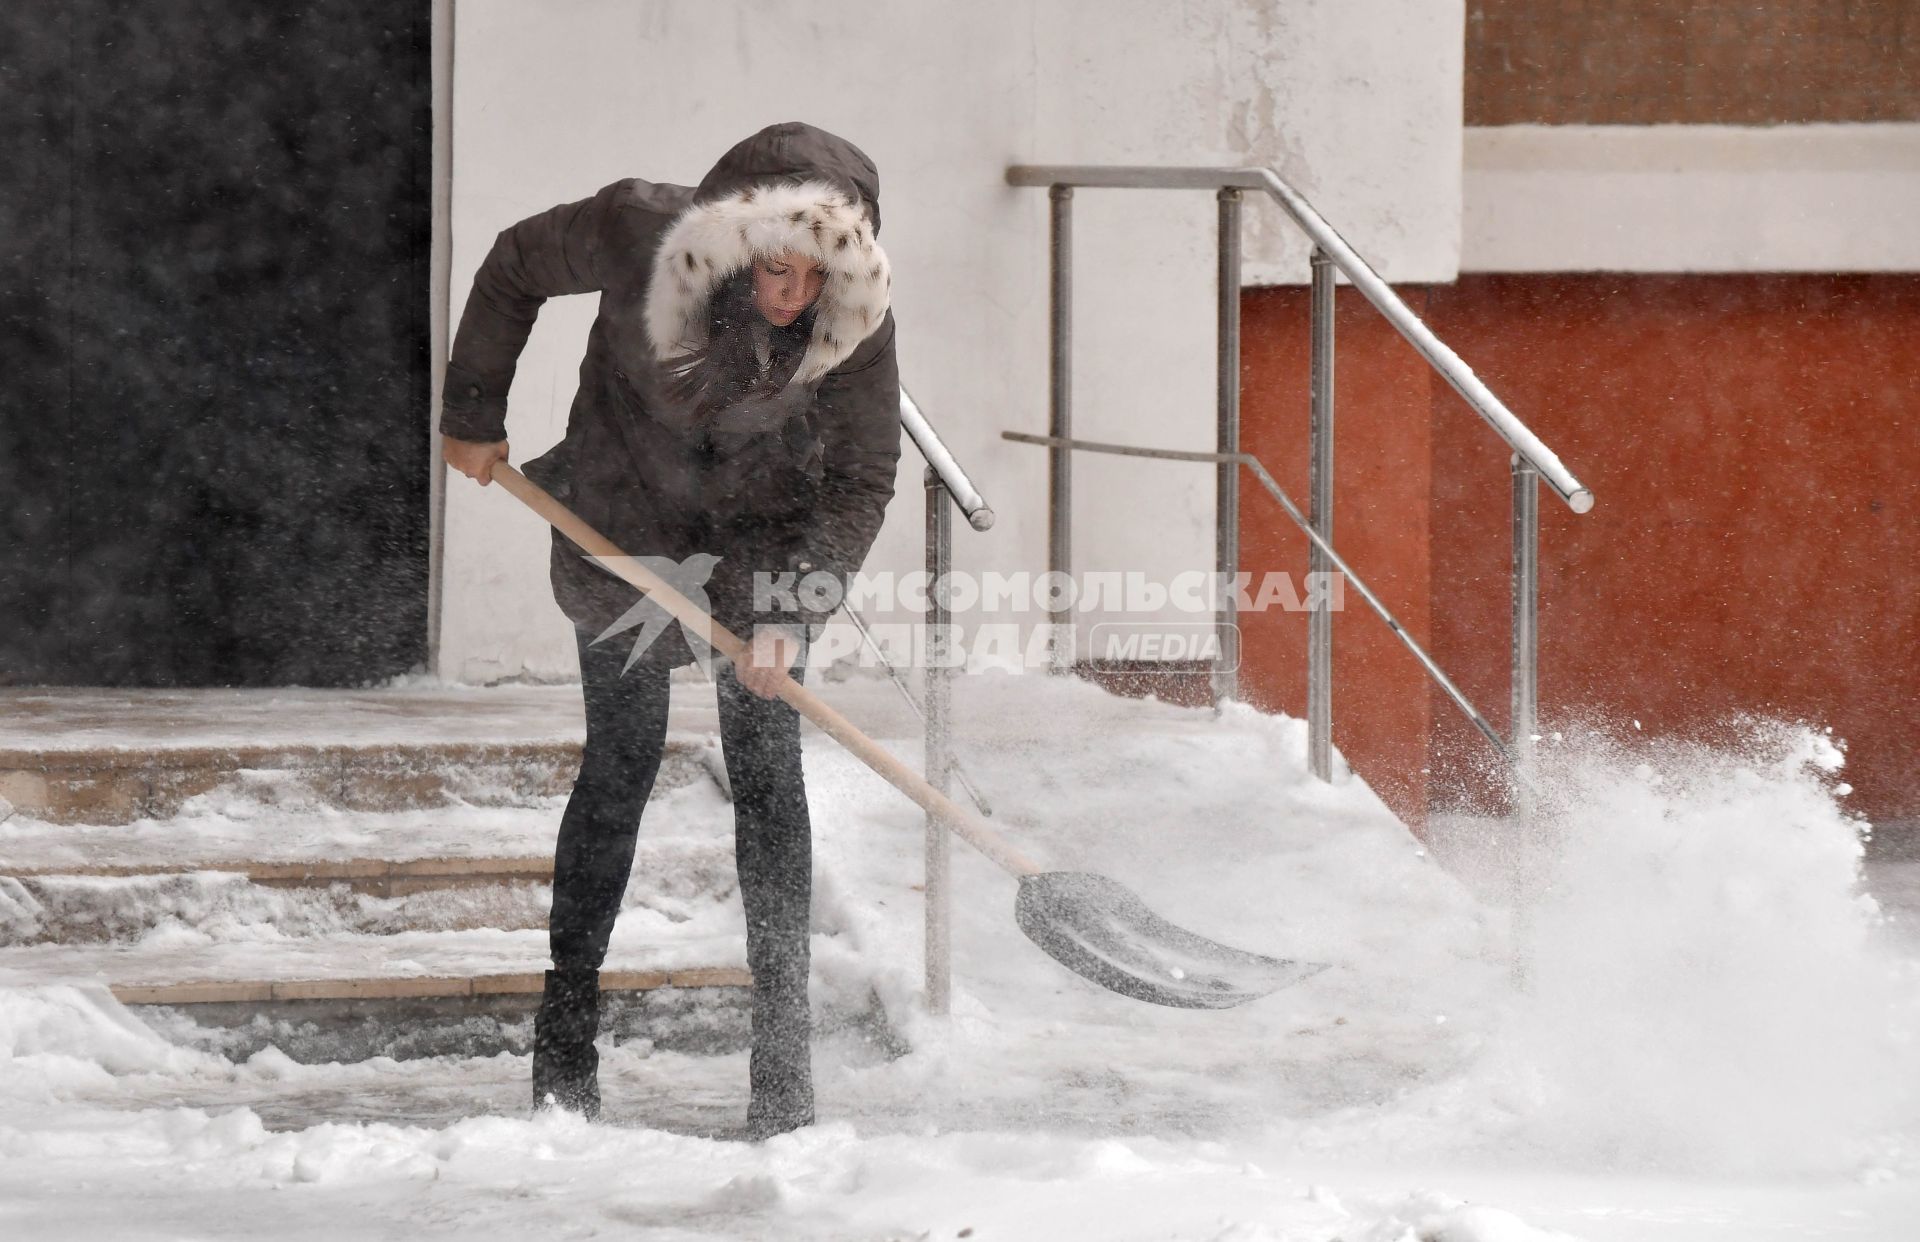 Москва.  Женщина расчищает снег на улице.